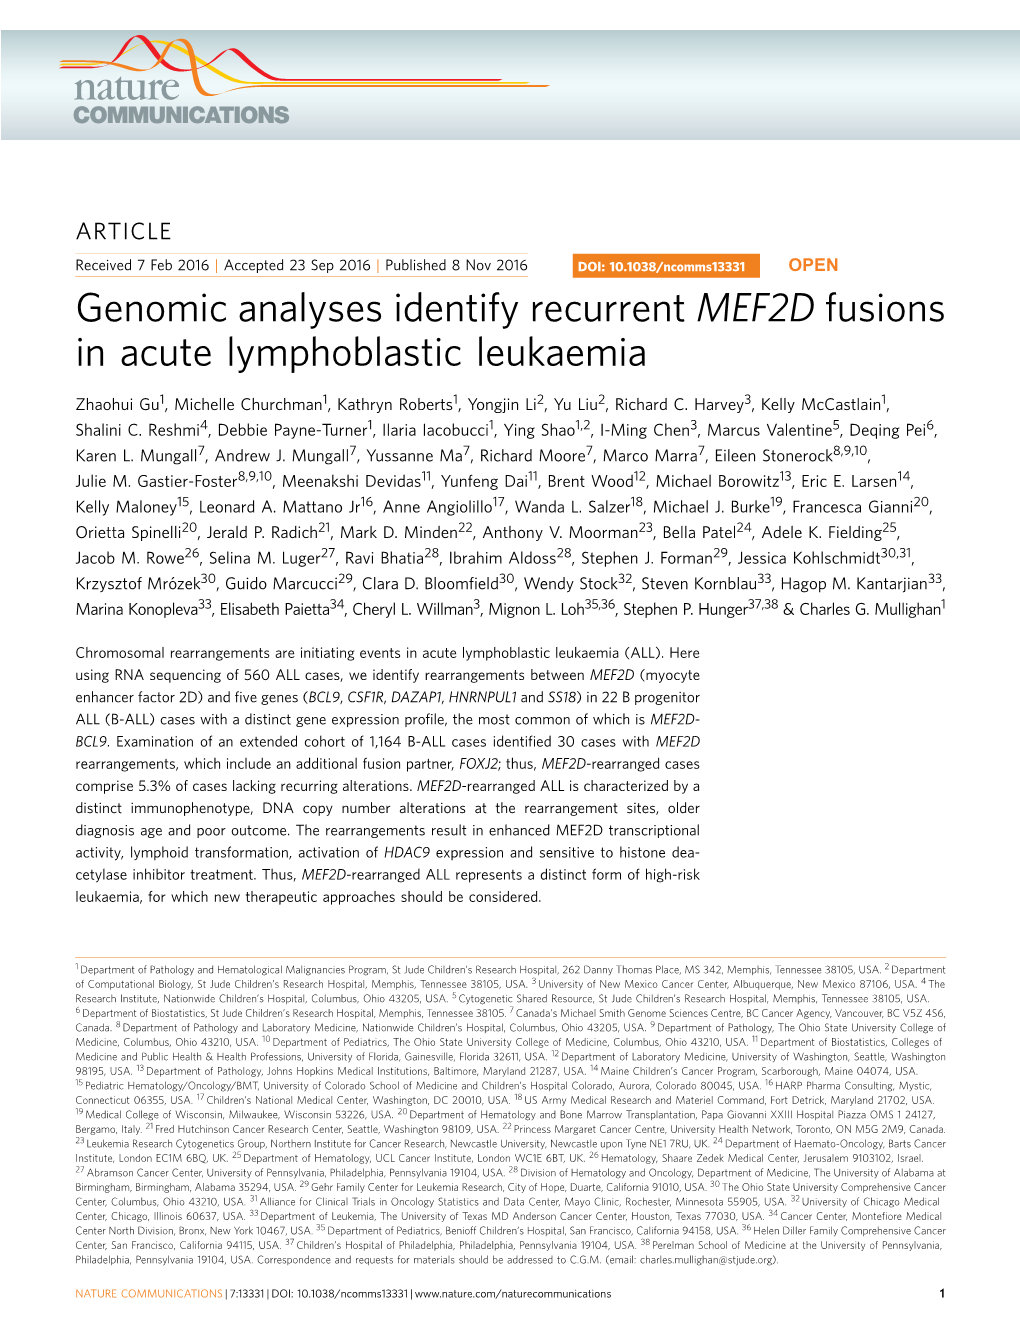 Genomic Analyses Identify Recurrent MEF2D Fusions in Acute Lymphoblastic Leukaemia